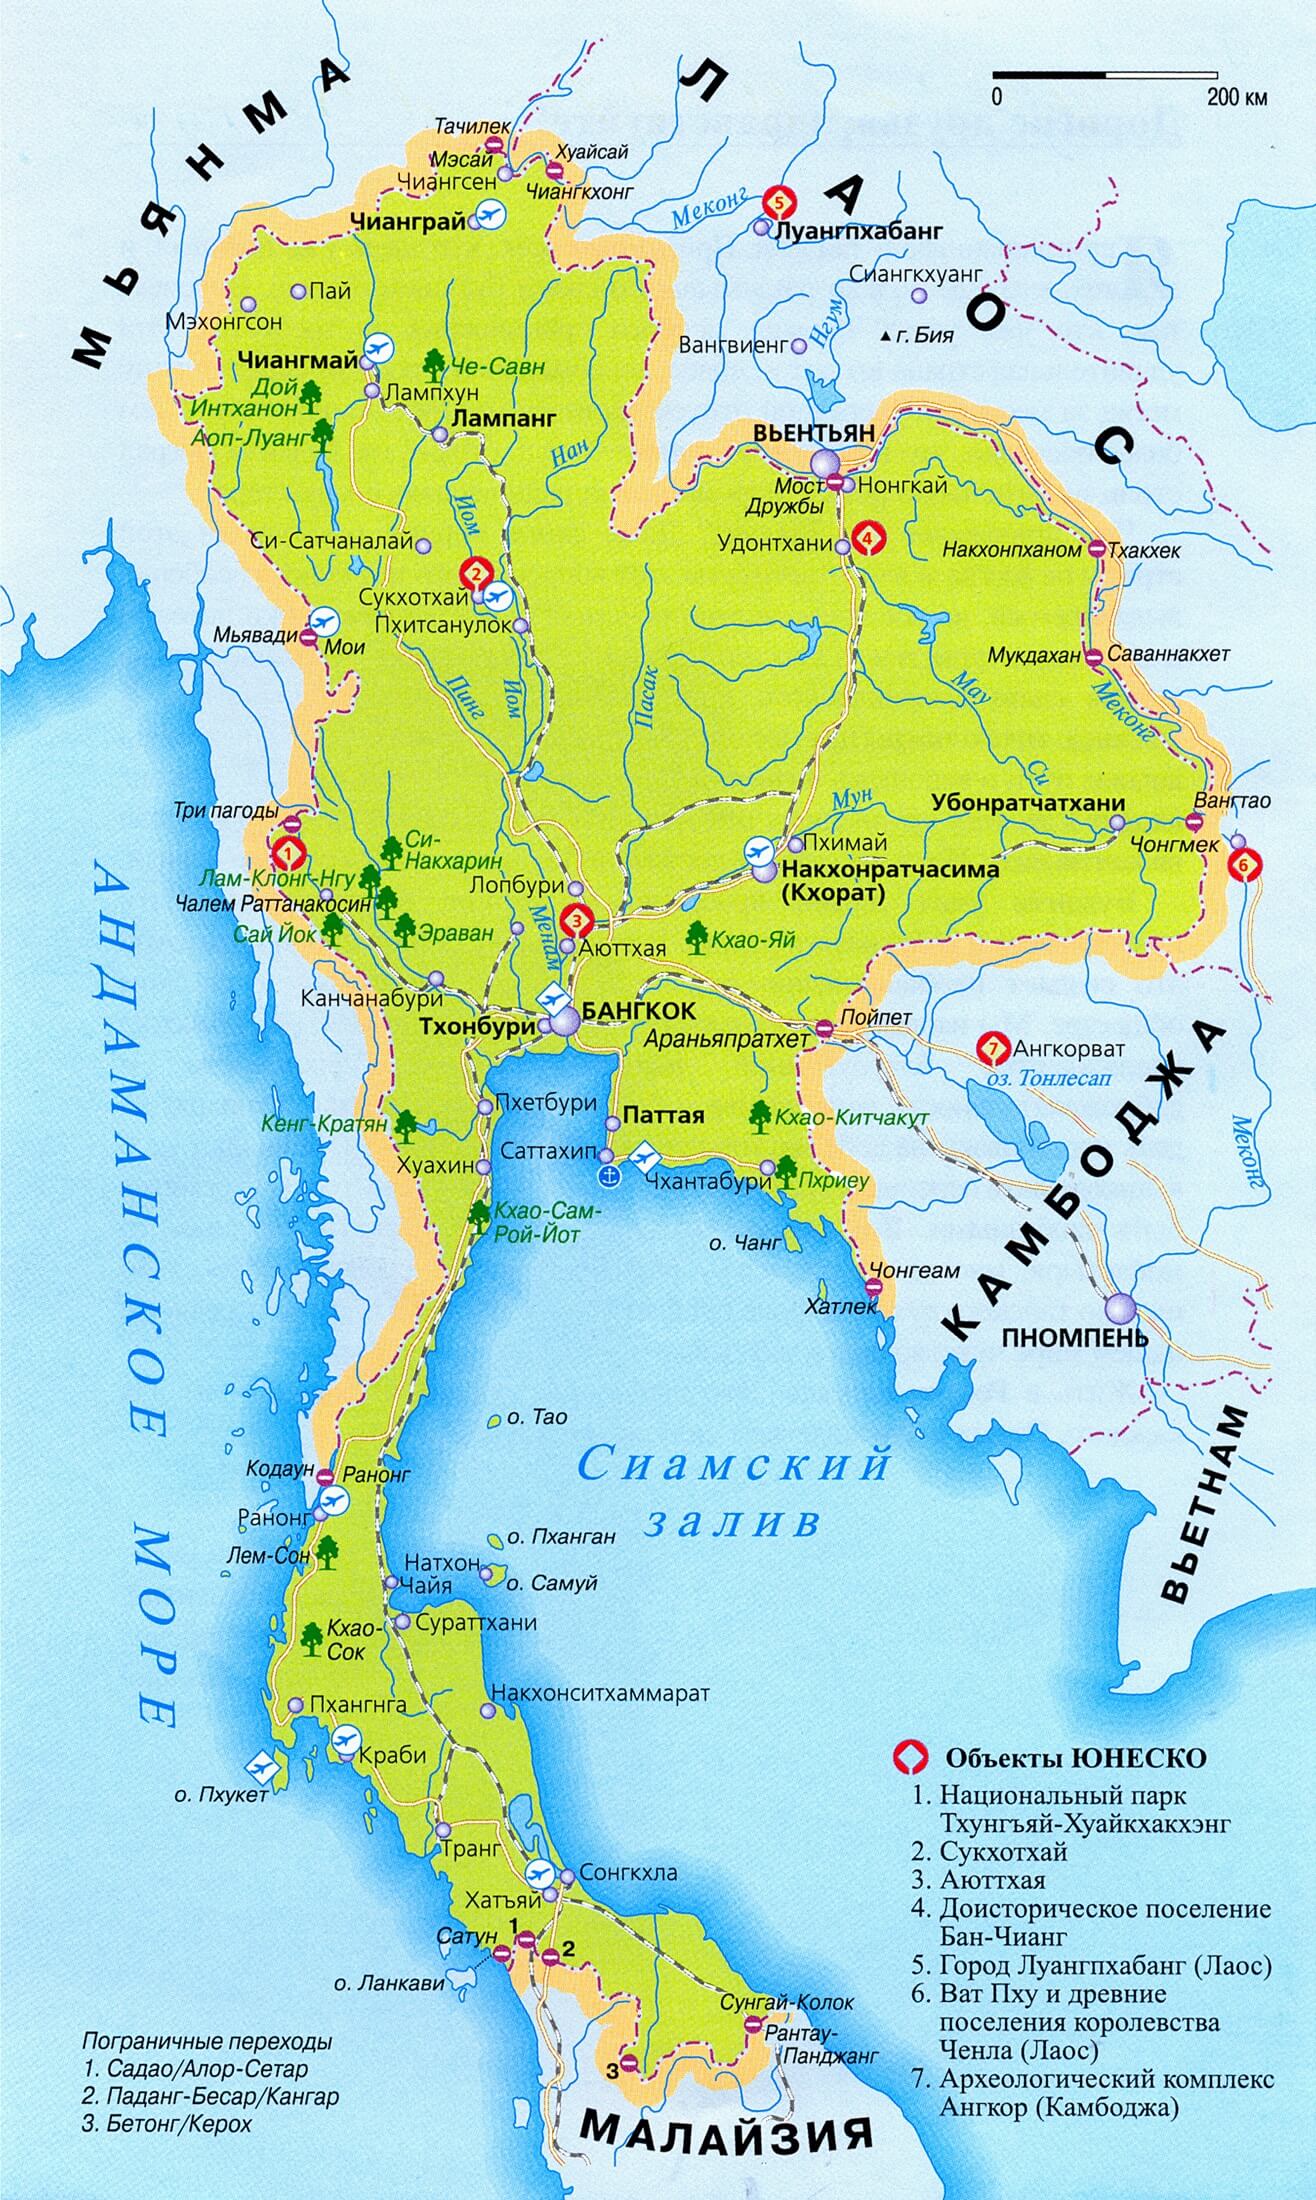 Переехать в тайланд на пмж из россии где можно получить гражданство купив недвижимость